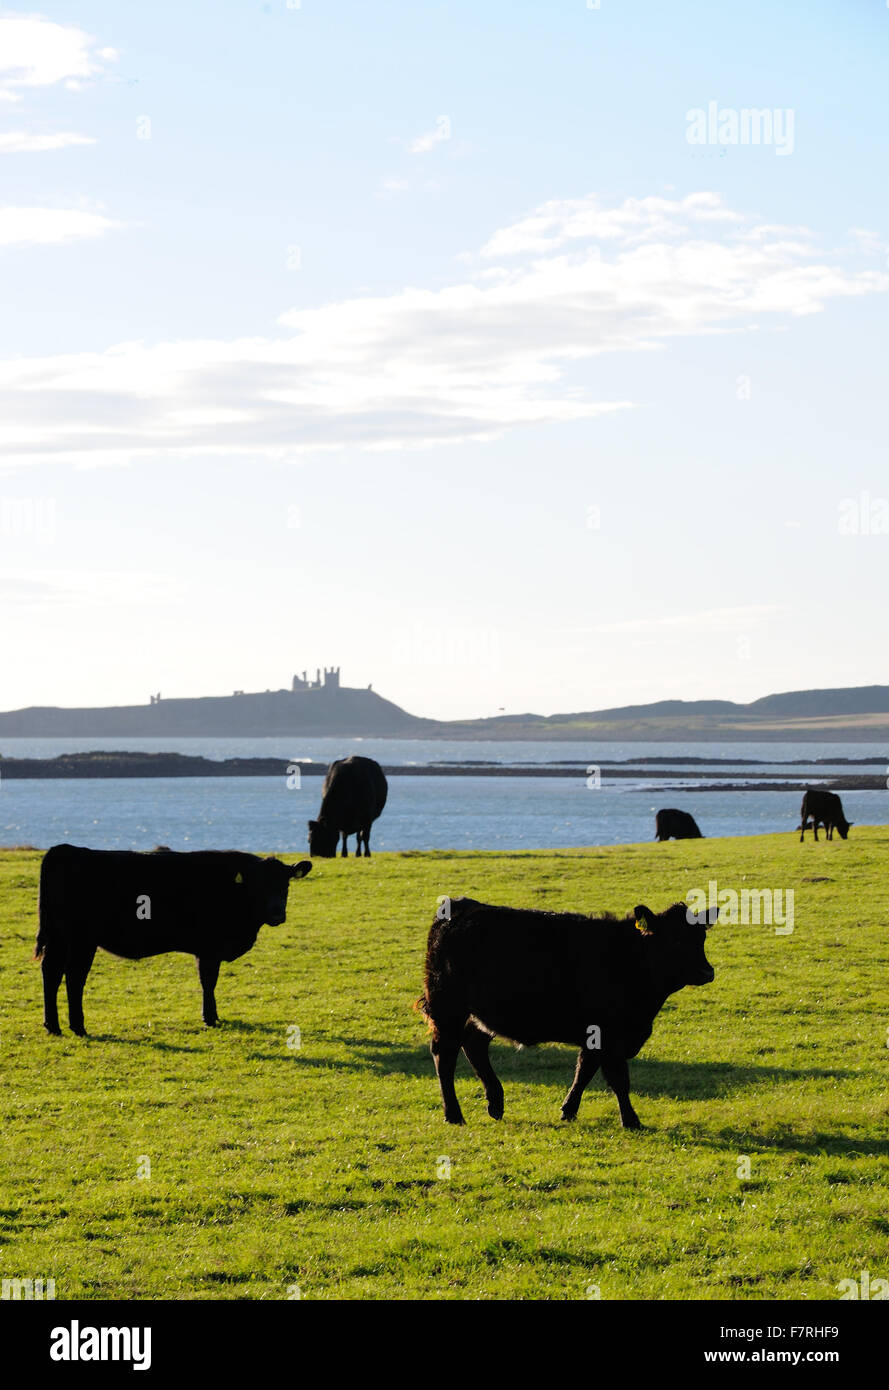 La costa de Northumberland, Northumberland. Estiramiento de Lindisfarne a Druridge Bay, este litoral posee hermosas aldeas de pescadores y playas desiertas. Foto de stock